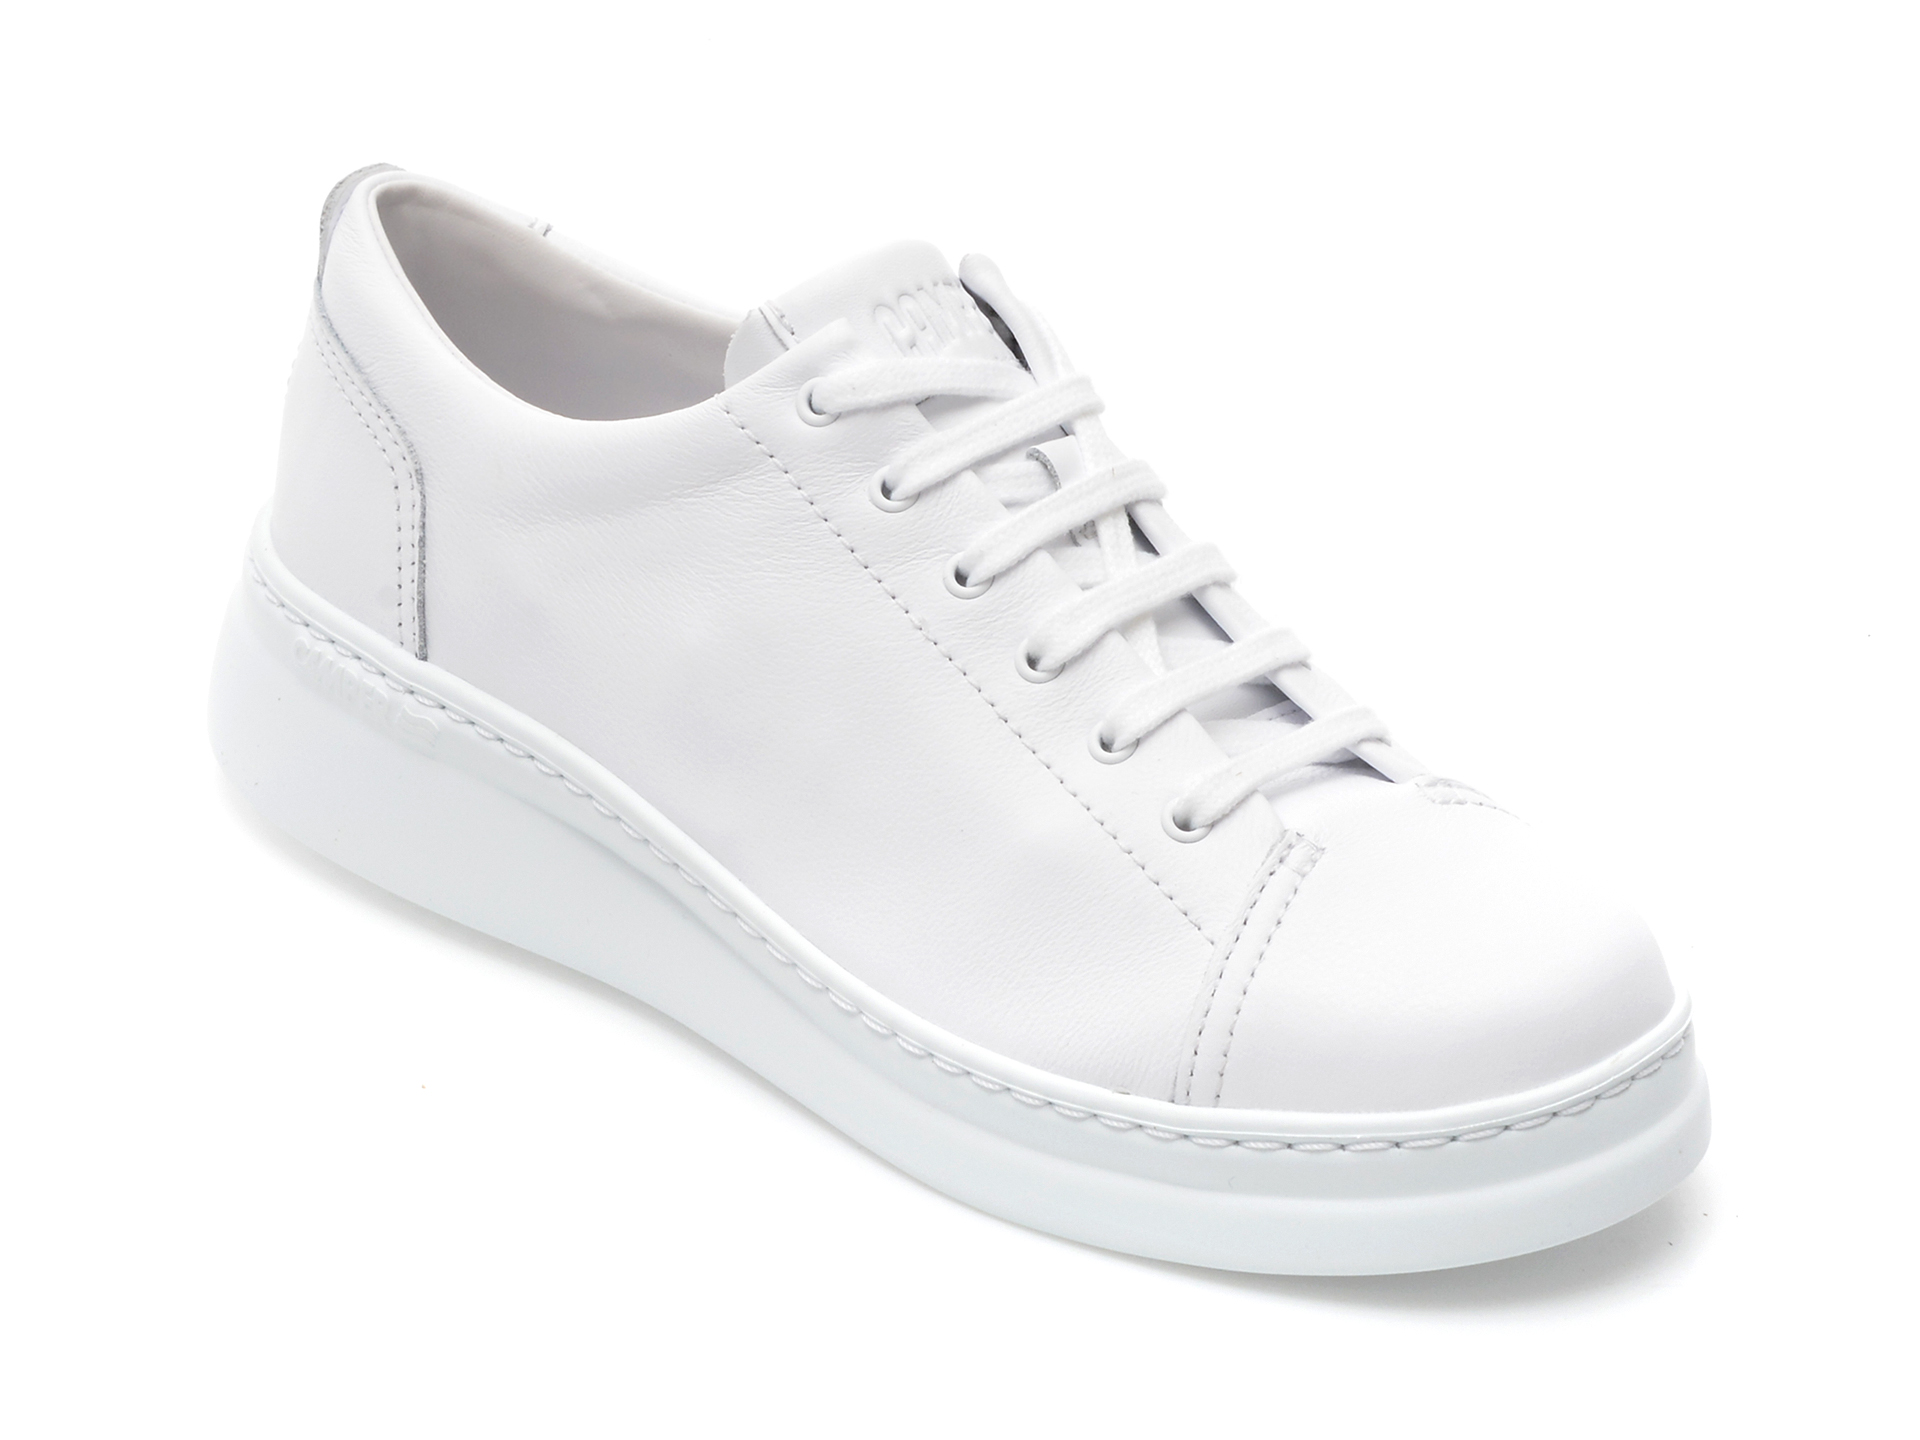 Pantofi sport CAMPER albi, K200508, din piele naturala imagine reduceri black friday 2021 Camper